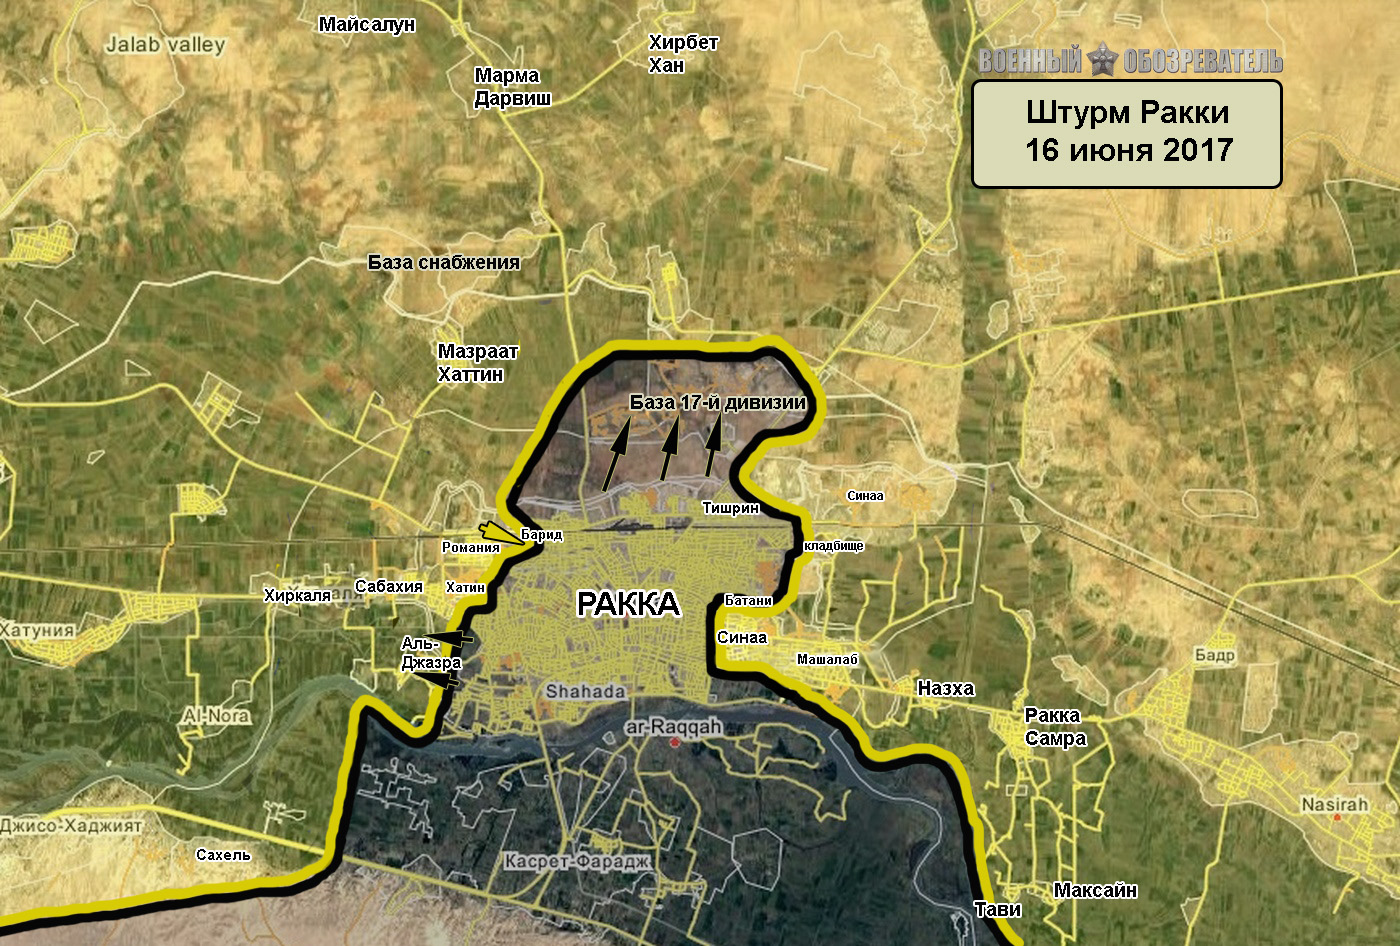 ИГ второй раз за неделю отбило базу 17-й дивизии севернее Ракки